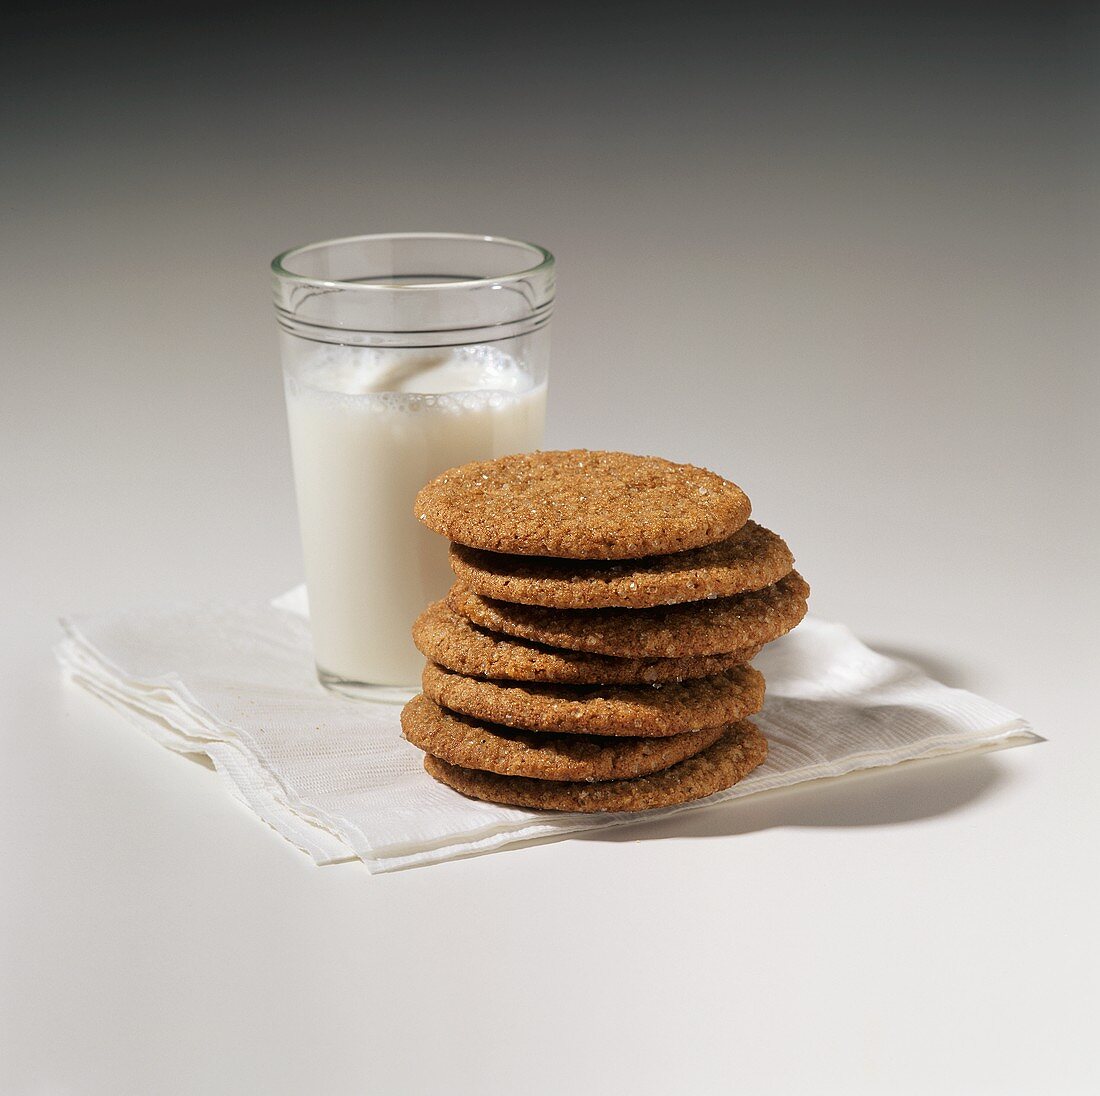 Ingwer-Melasse-Cookies und ein Glas Milch